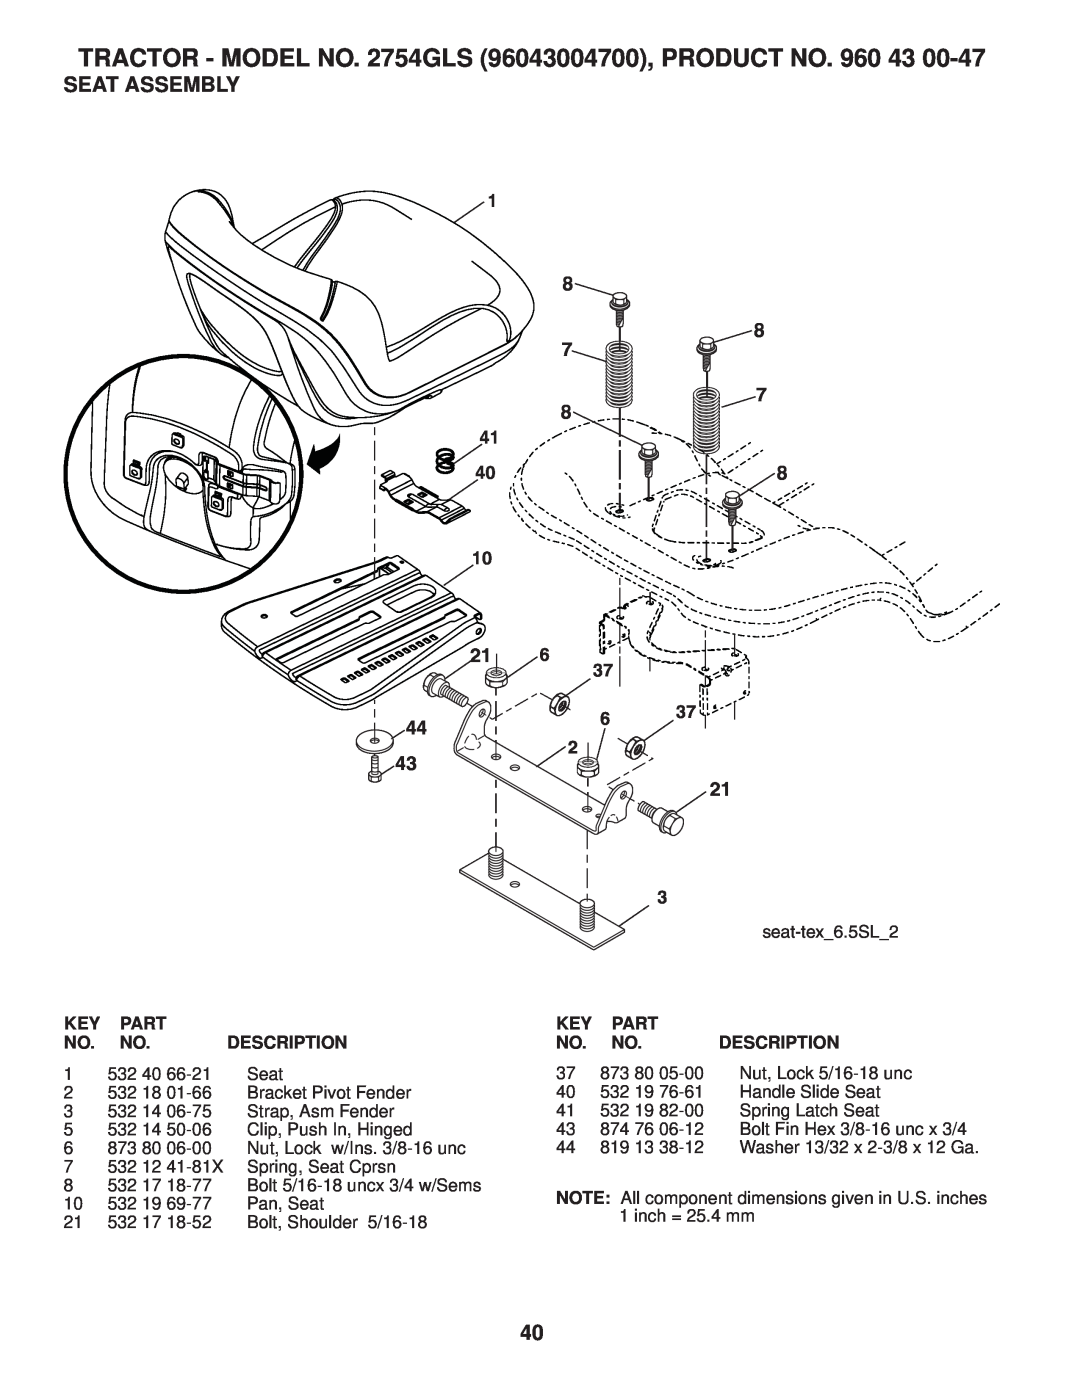 Husqvarna 2754 GLS manual Seat Assembly, TRACTOR - MODEL NO. 2754GLS 96043004700, PRODUCT NO. 960, Part, Description, 532 